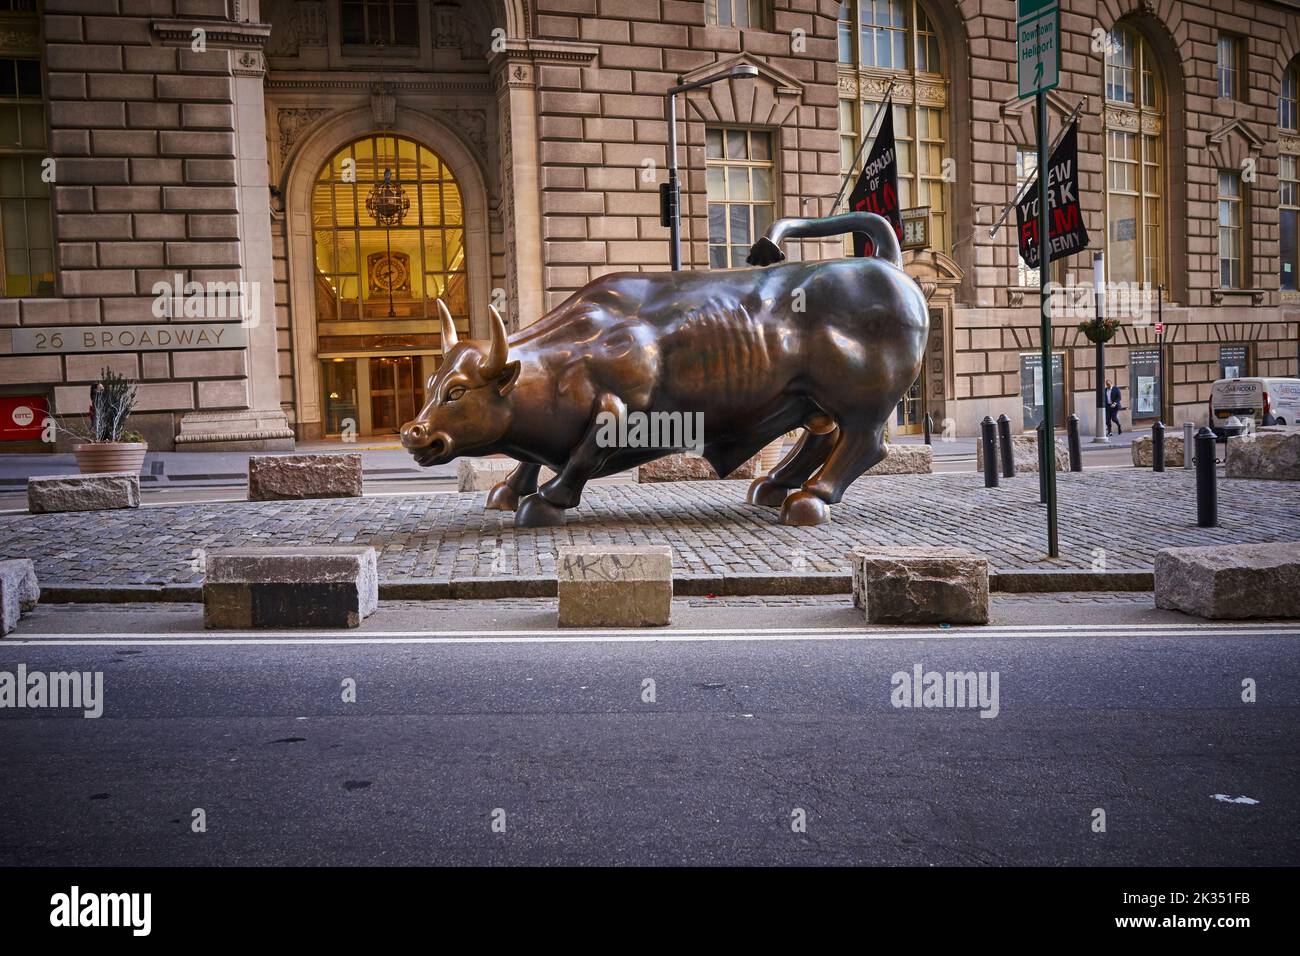 Charging Bull ist ein beliebtes Touristenziel, das Tausende von Menschen anzieht und die Wall Street und den Finanzdistrikt symbolisiert. Stockfoto